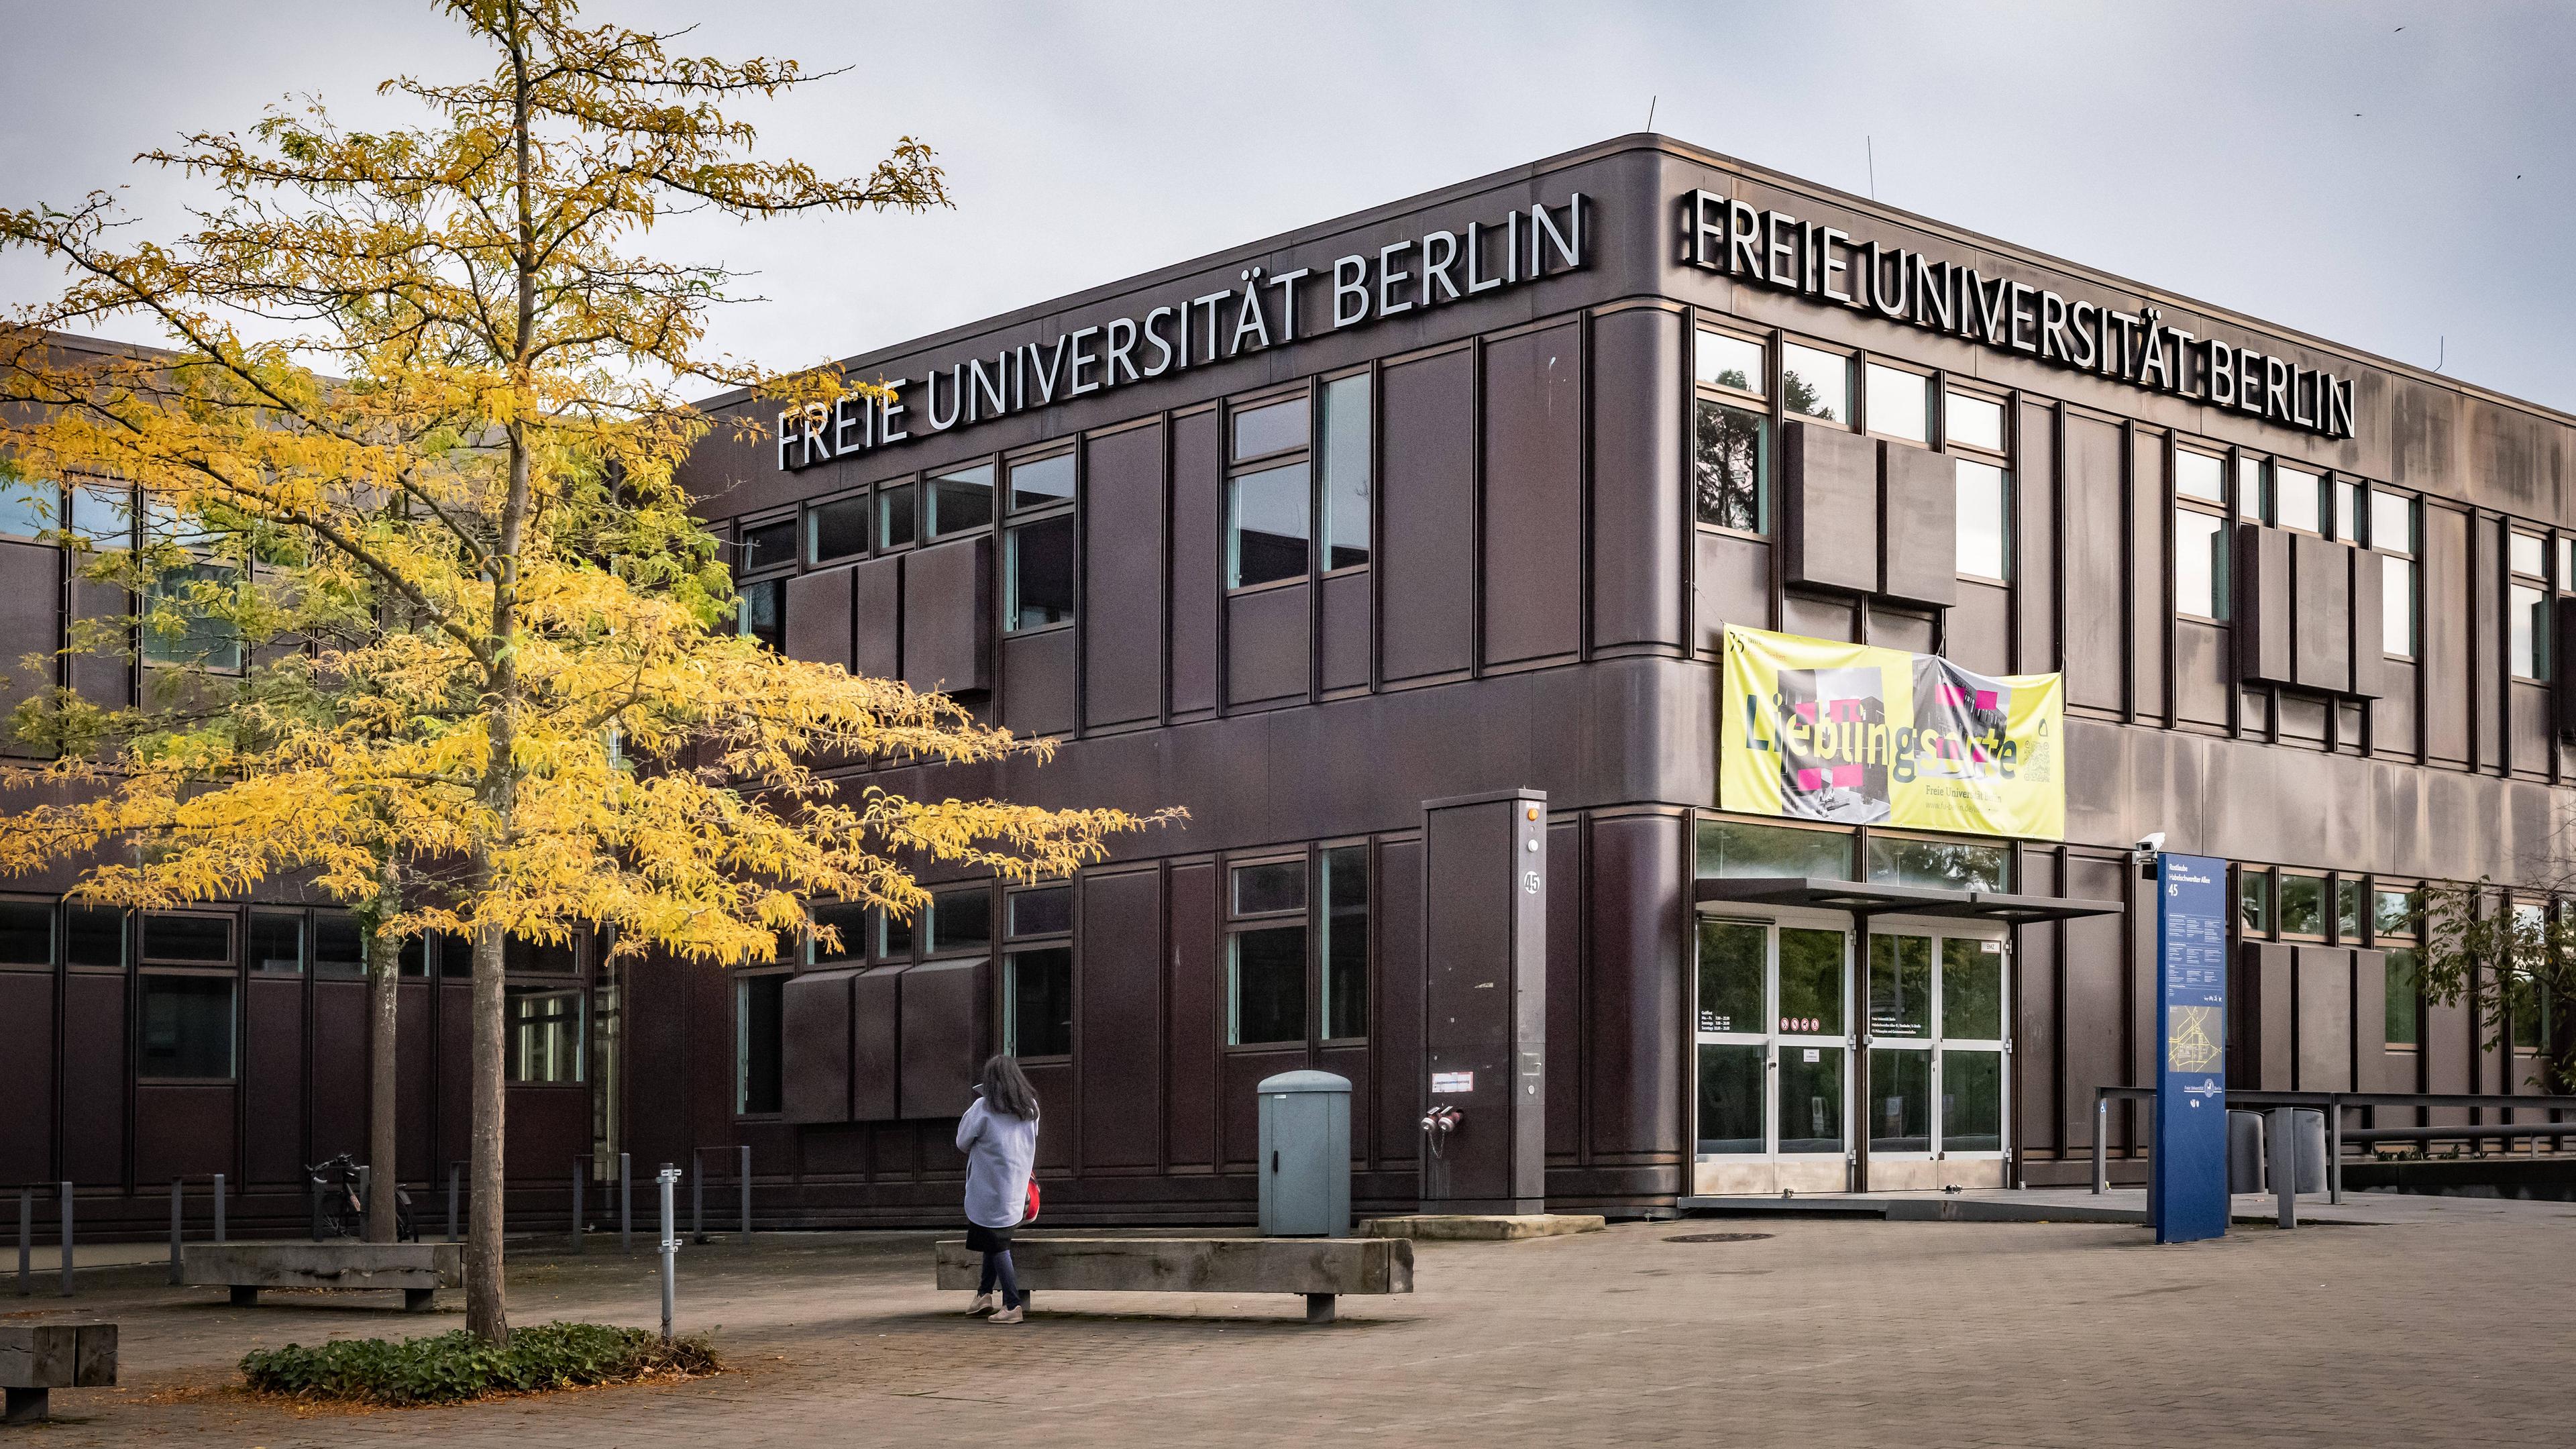 Typical: Freie Universität Berlin